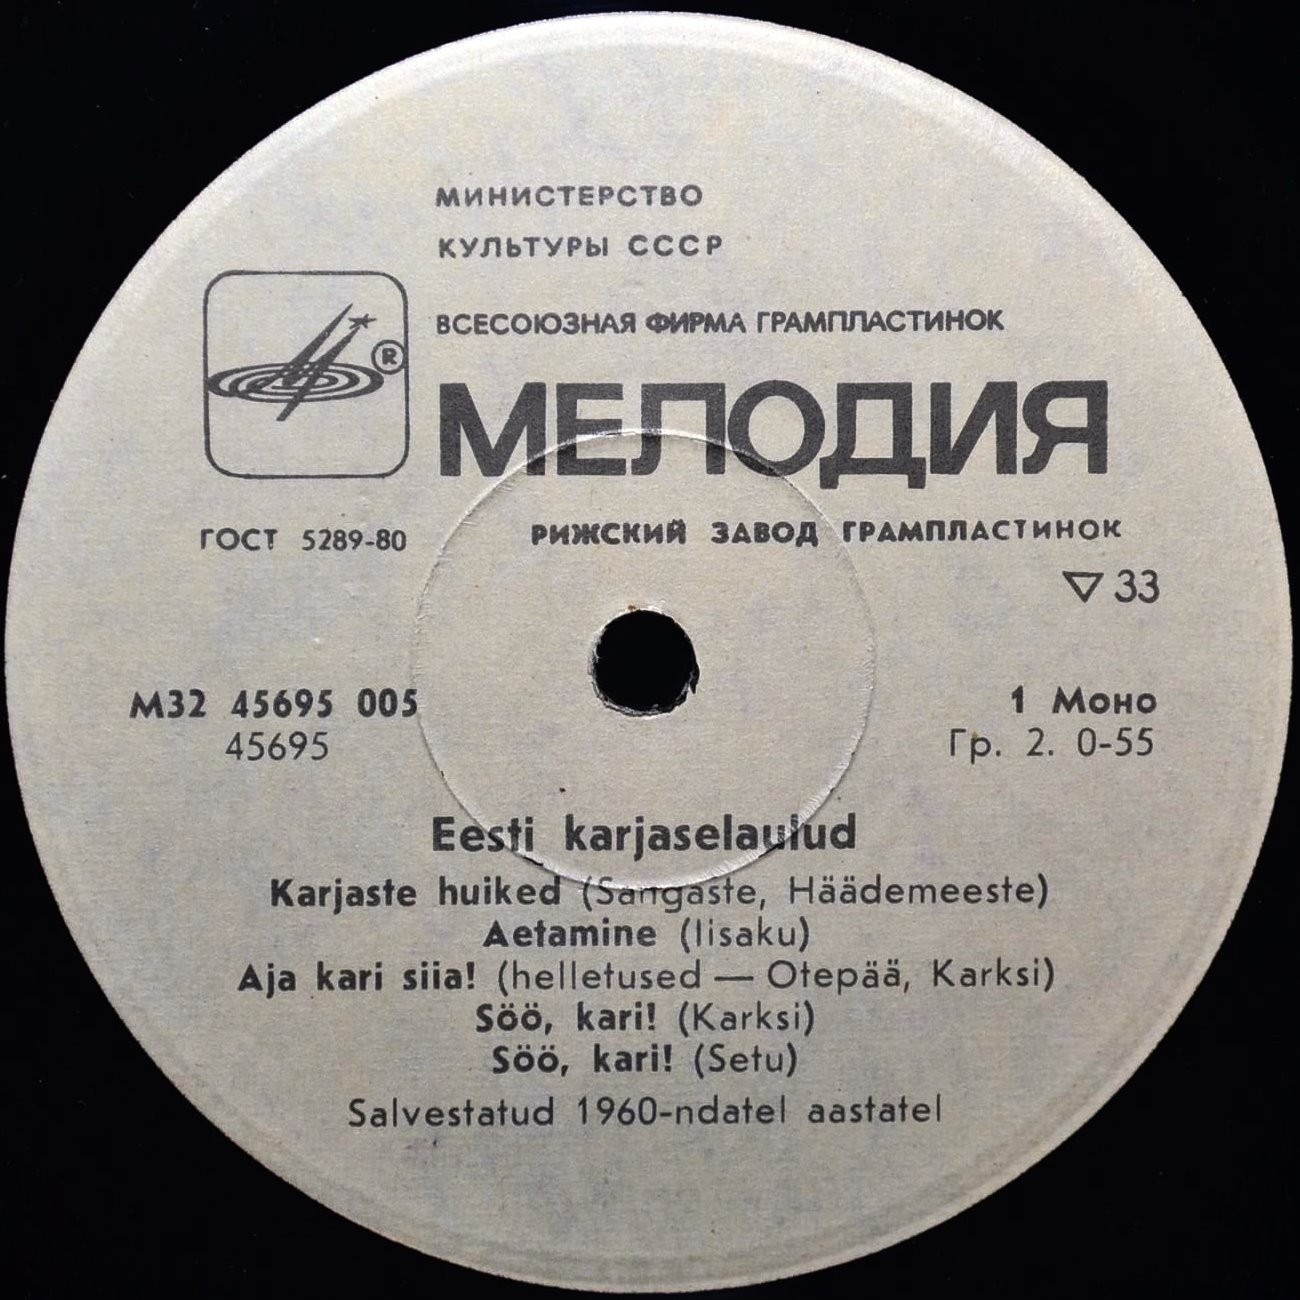 Эстонские пастушьи песни (Eesti Karjaselaulud)